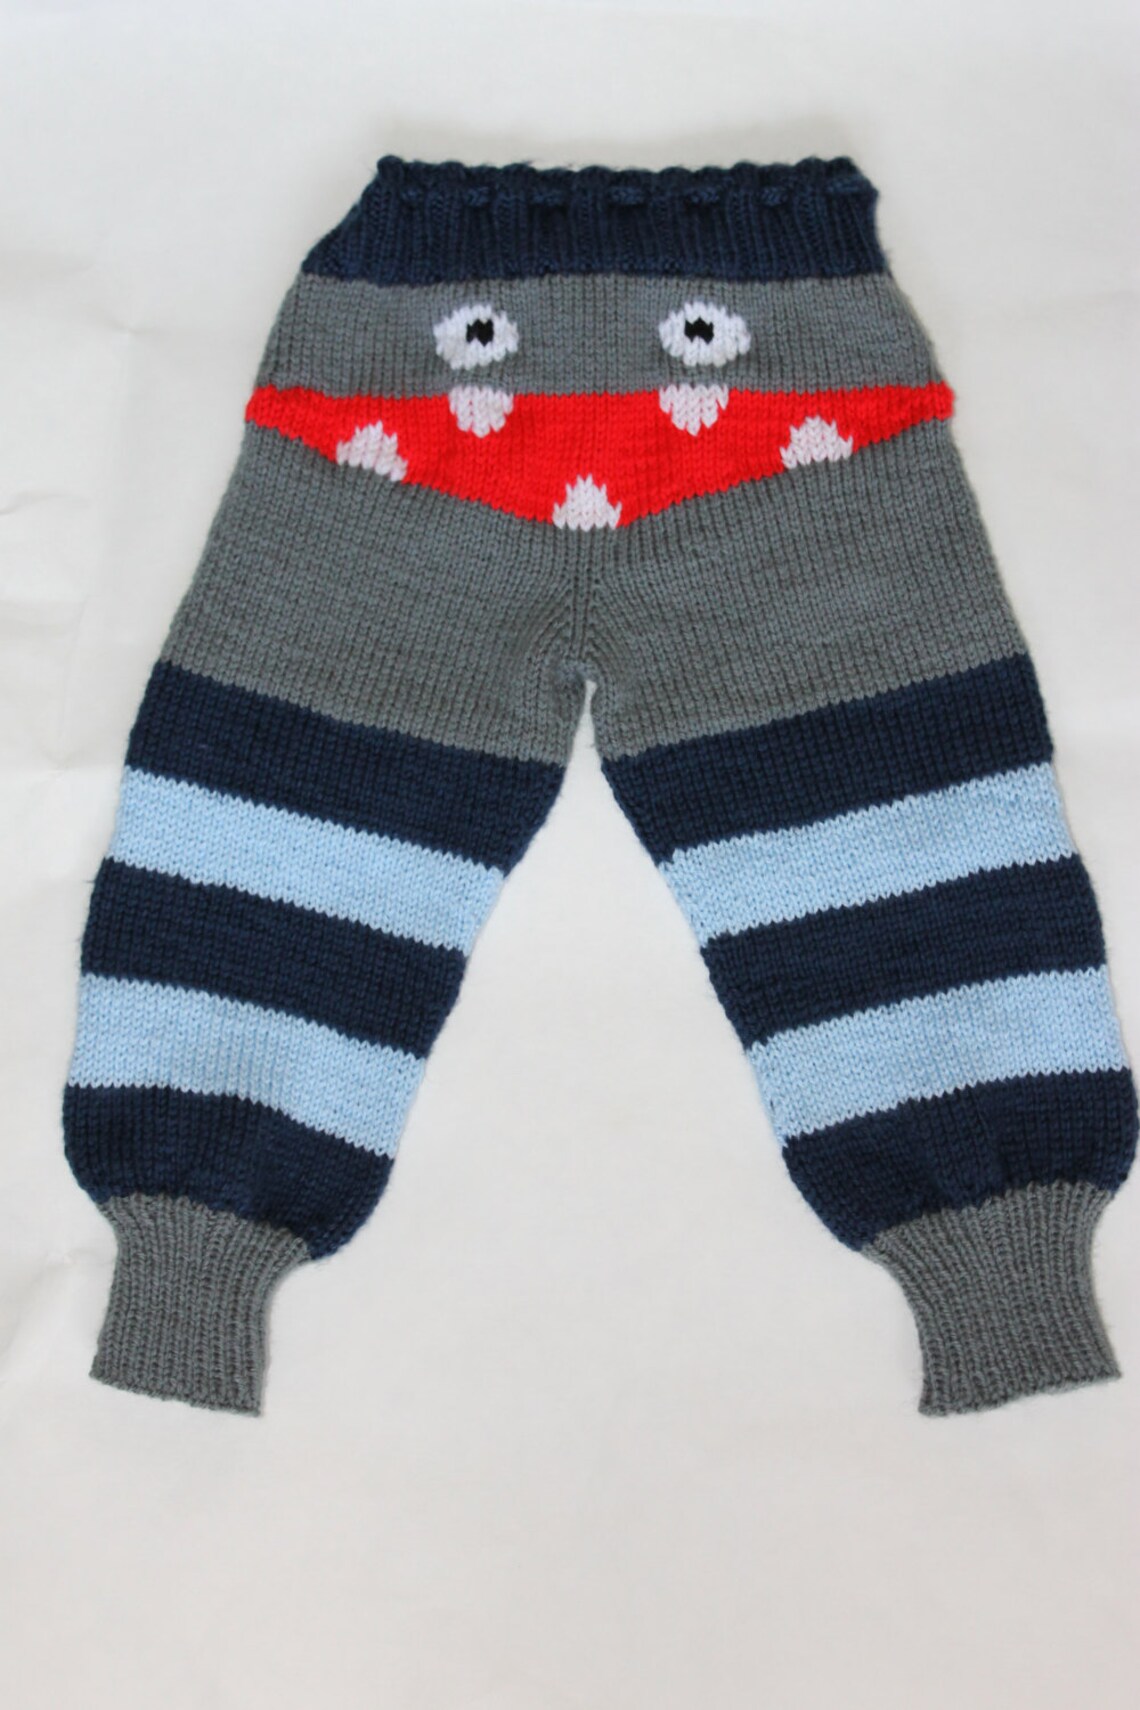 Knit PATTERN Mindy's Knit Monster Pants PATTERN - Etsy